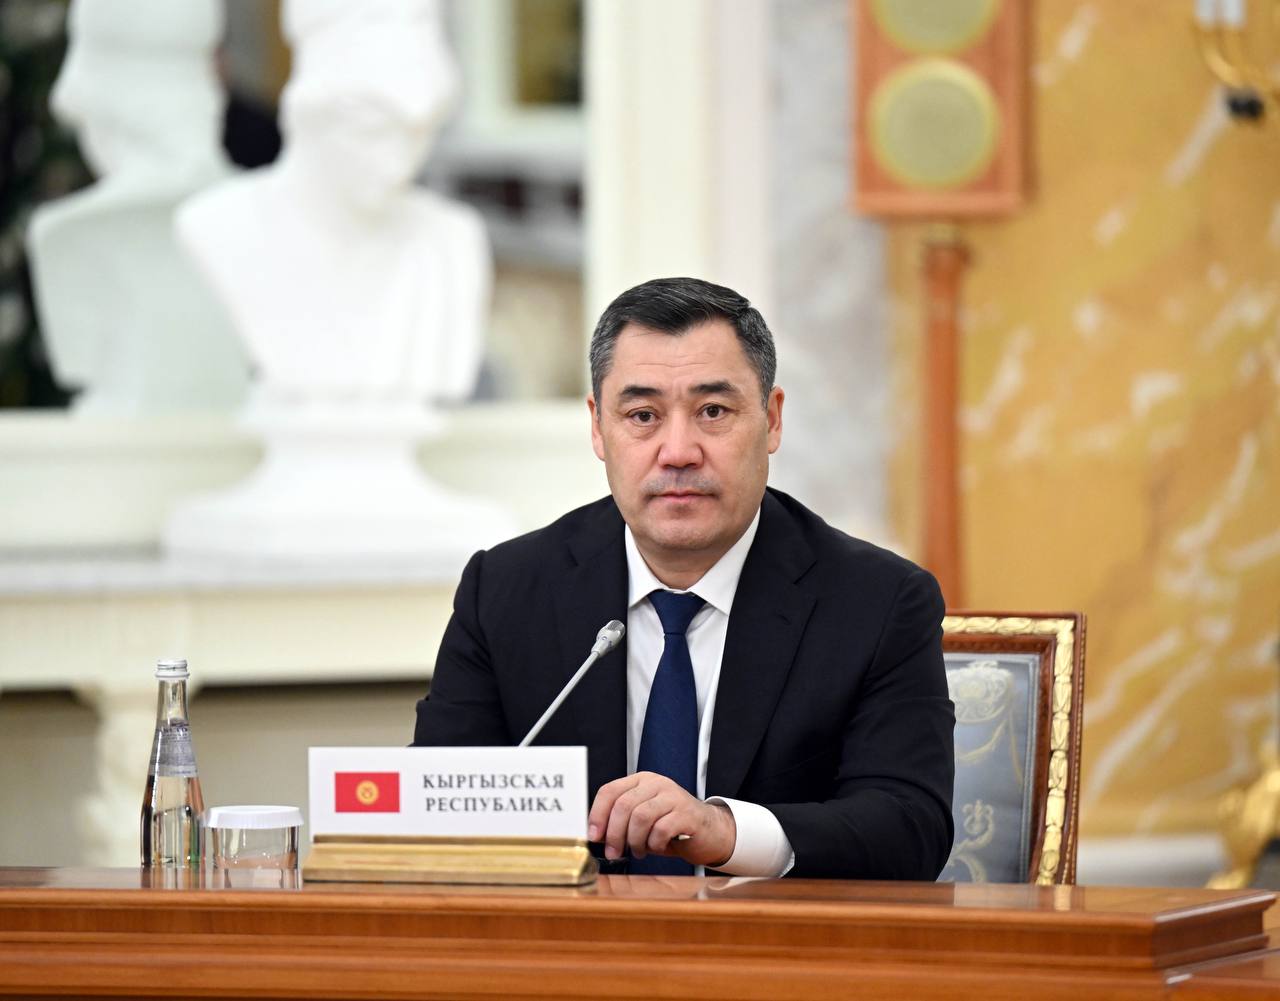 Президент Кыргызской Республики Садыр Жапаров сегодня, 26 декабря, принял участие в неформальной встрече лидеров стран Содружества Независимых Государств в городе Санкт-Петербург. 